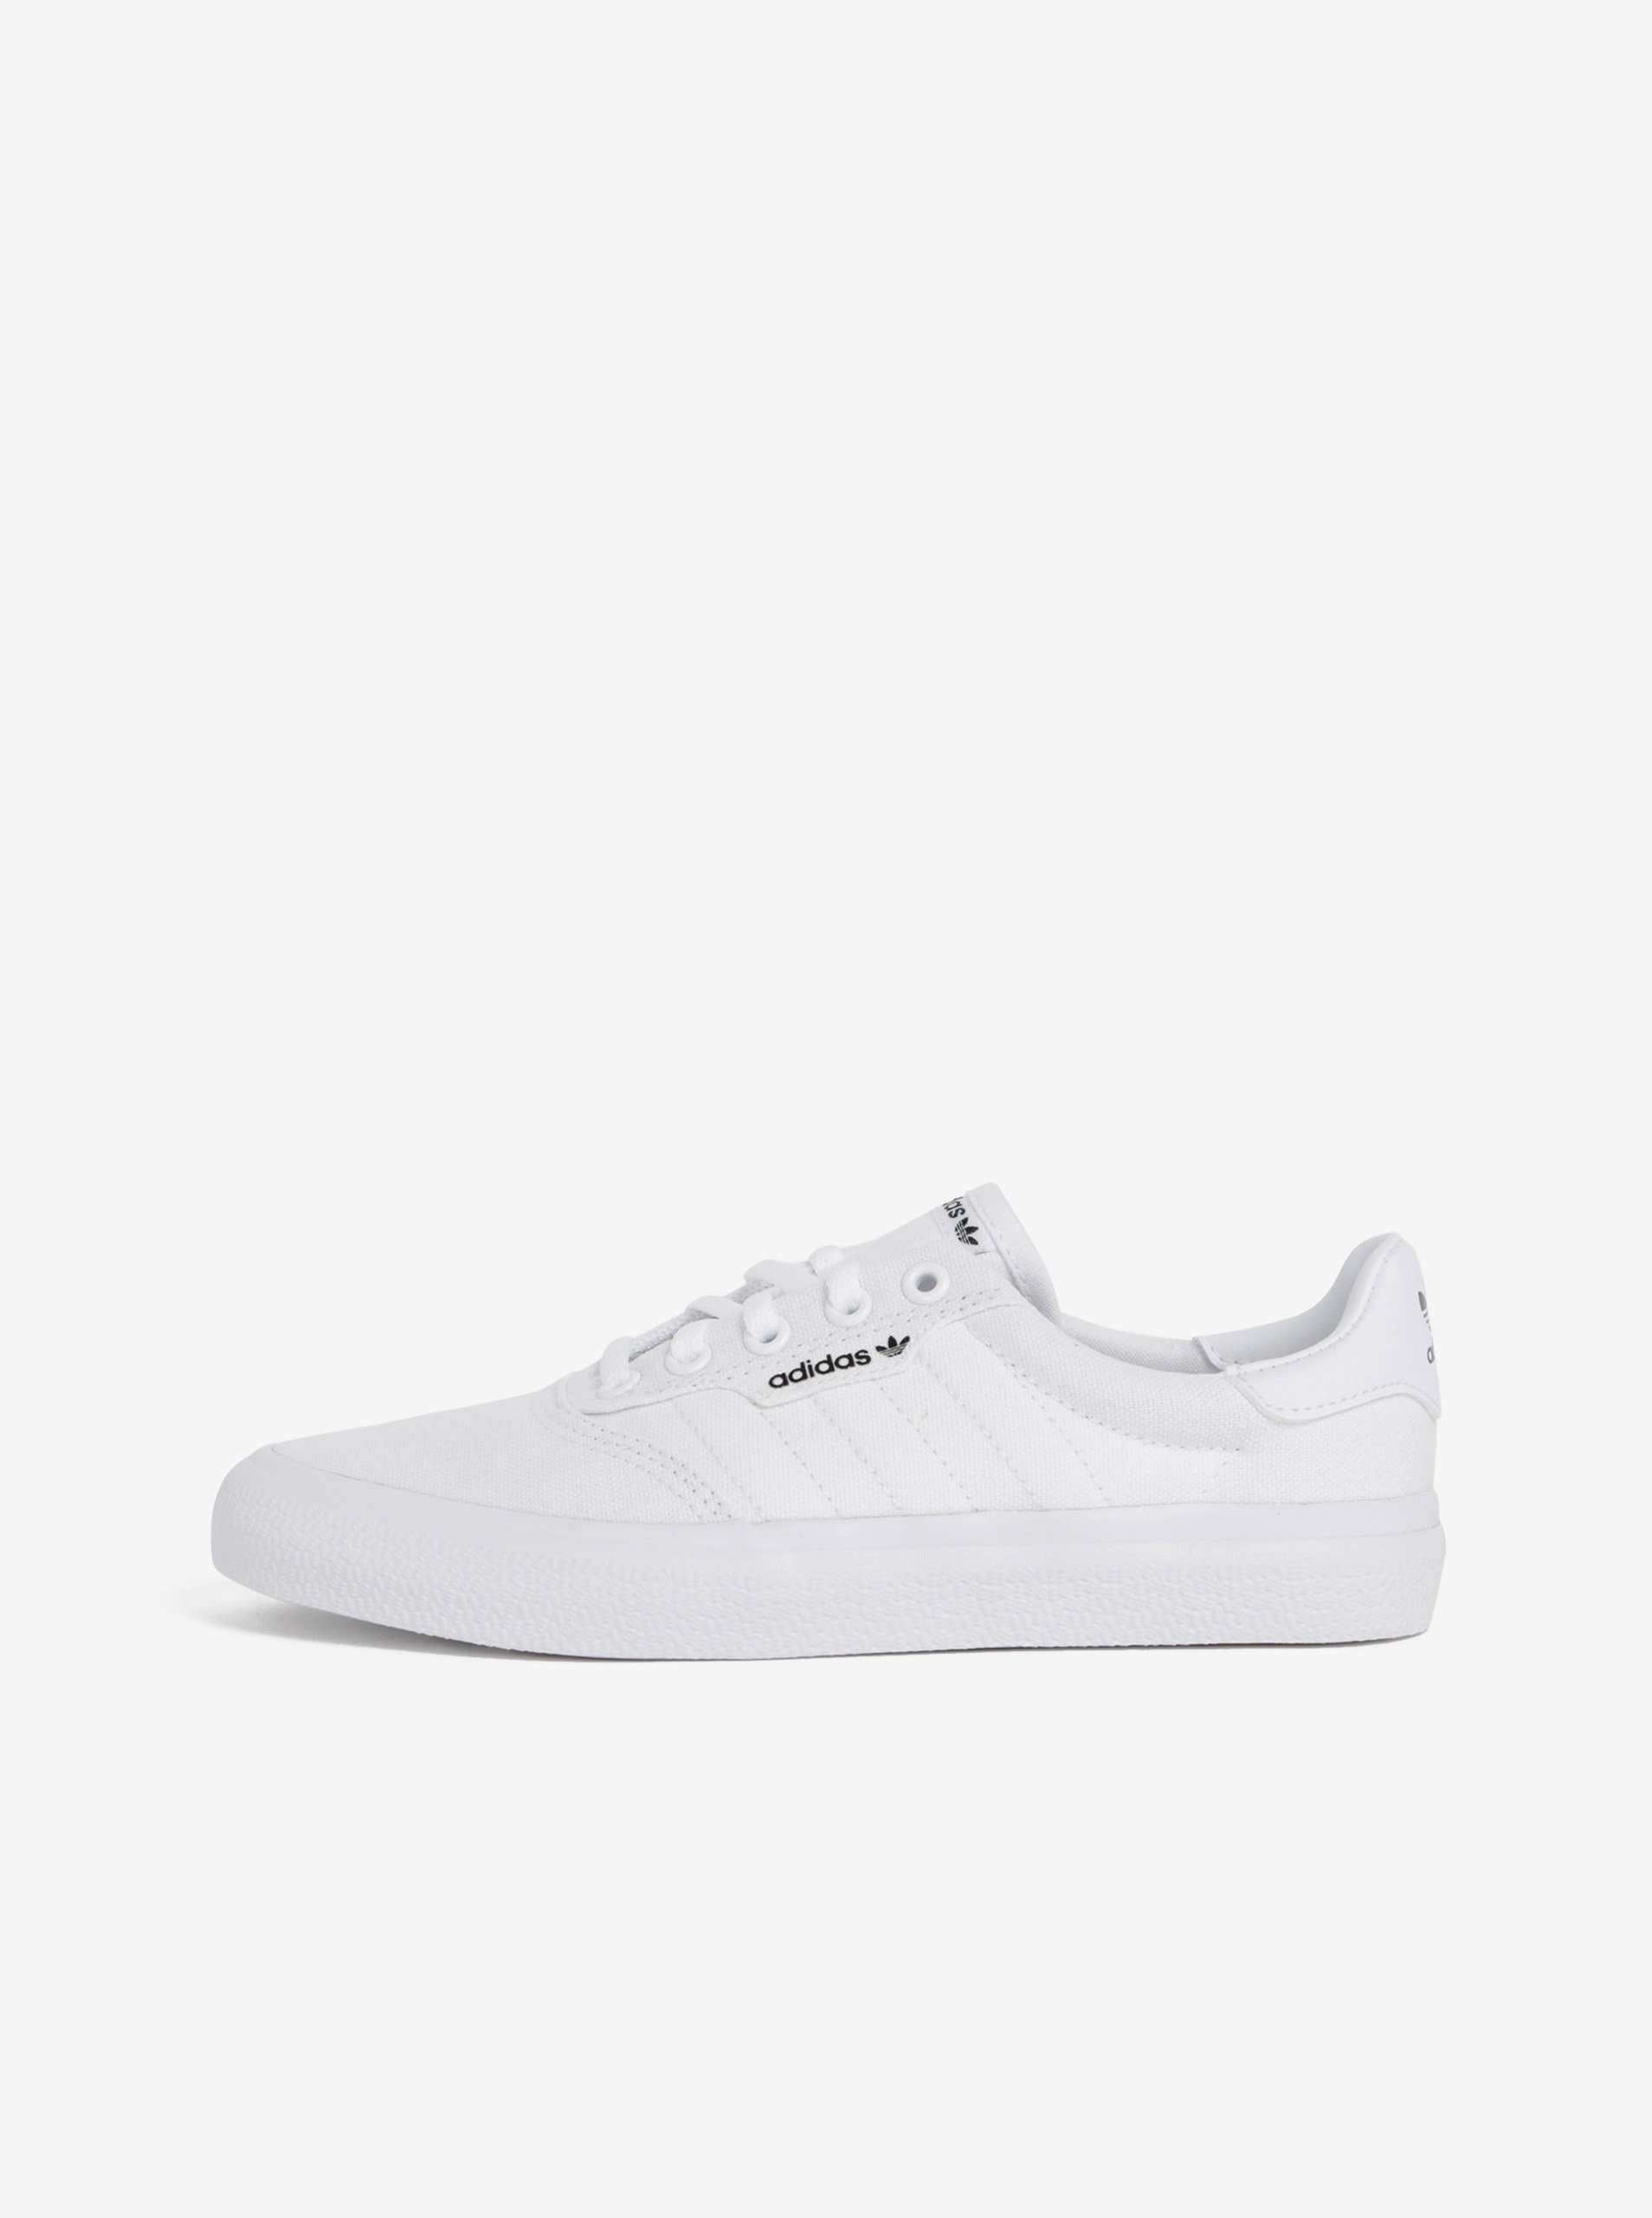 E-shop Biele dámske tenisky adidas Originals 3MC